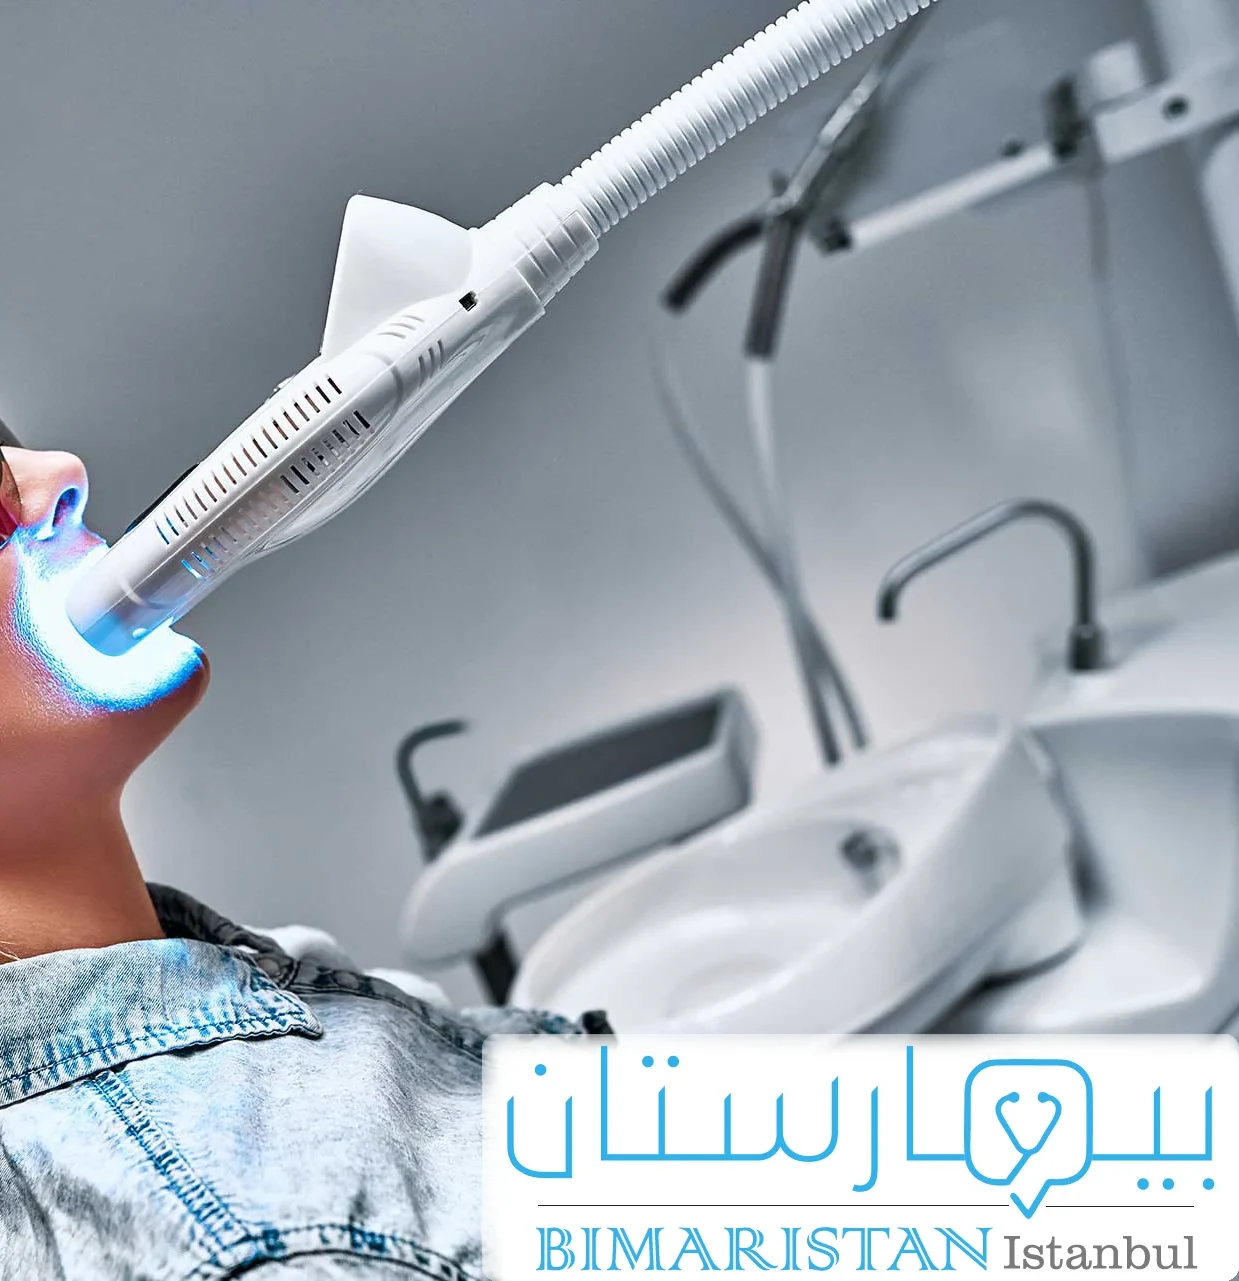 Lazerle diş beyazlatmada kullanılan diş lazer cihazı